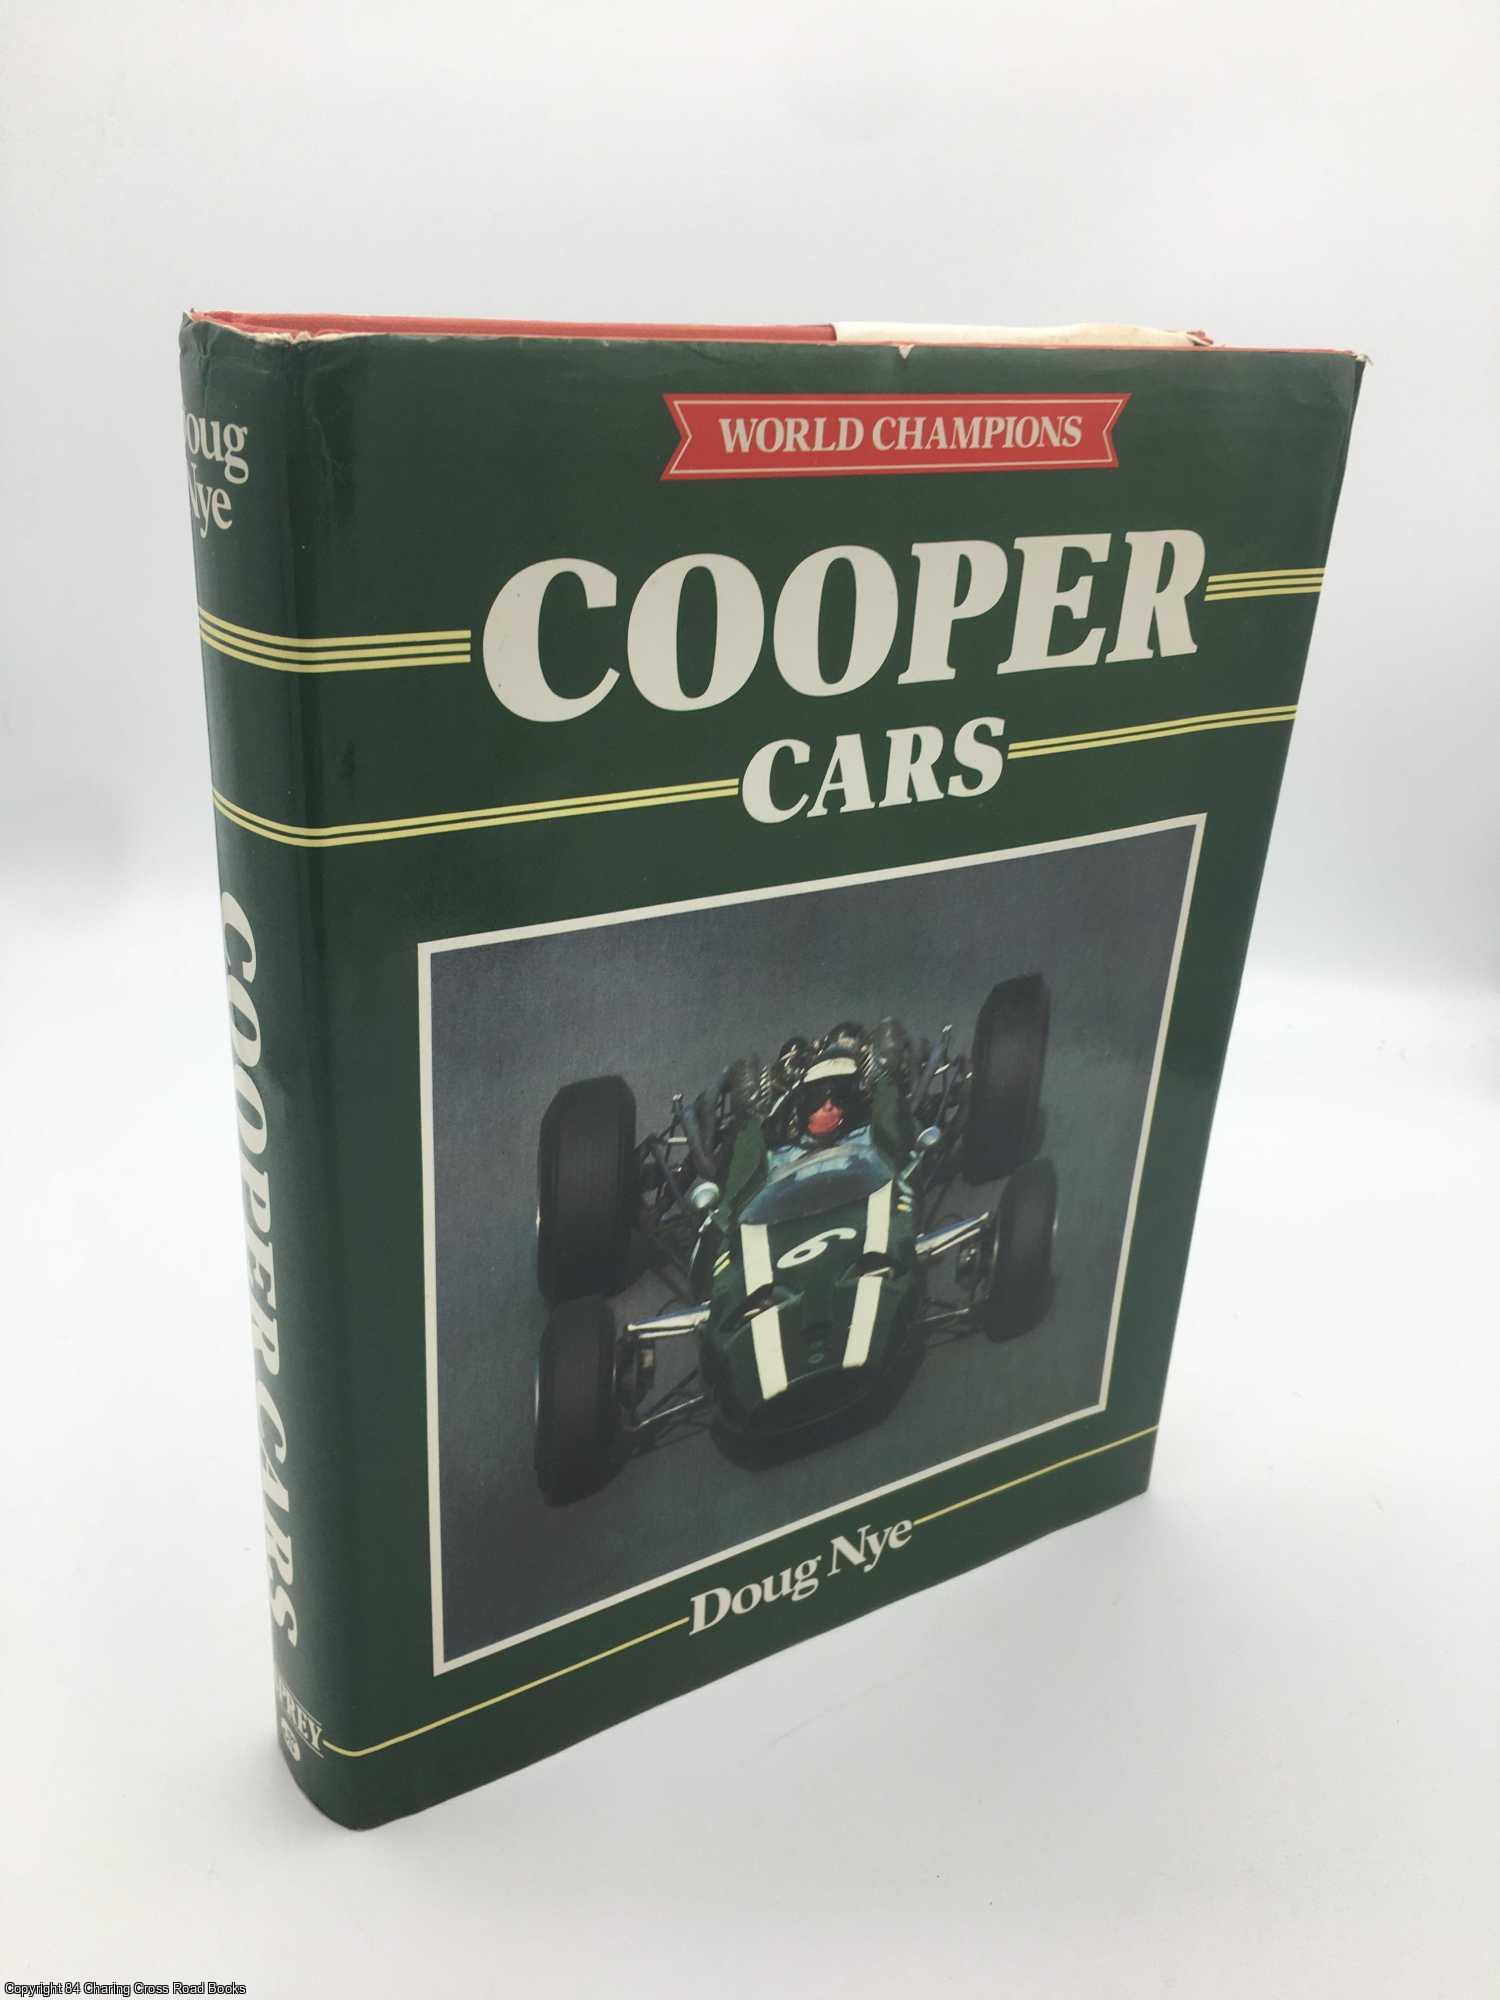 Nye, Doug - Cooper Cars